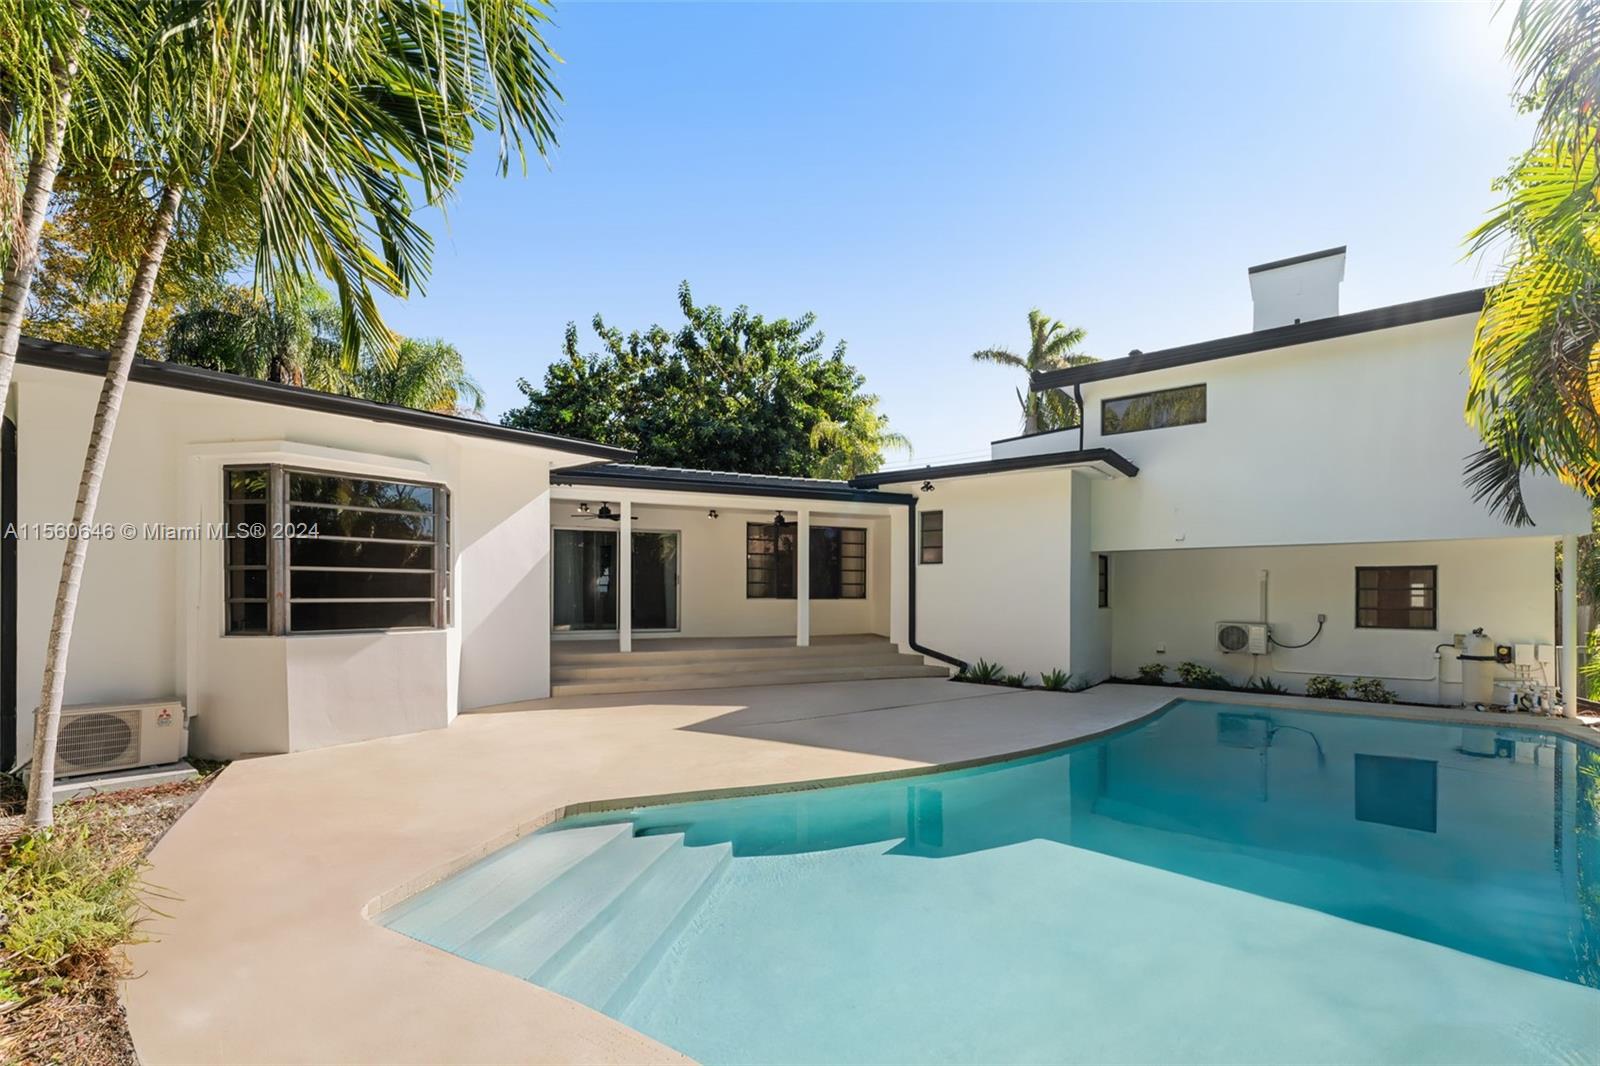 Rental Property at 4444 E Adams Ave, Miami Beach, Miami-Dade County, Florida - Bedrooms: 5 
Bathrooms: 5  - $13,000 MO.